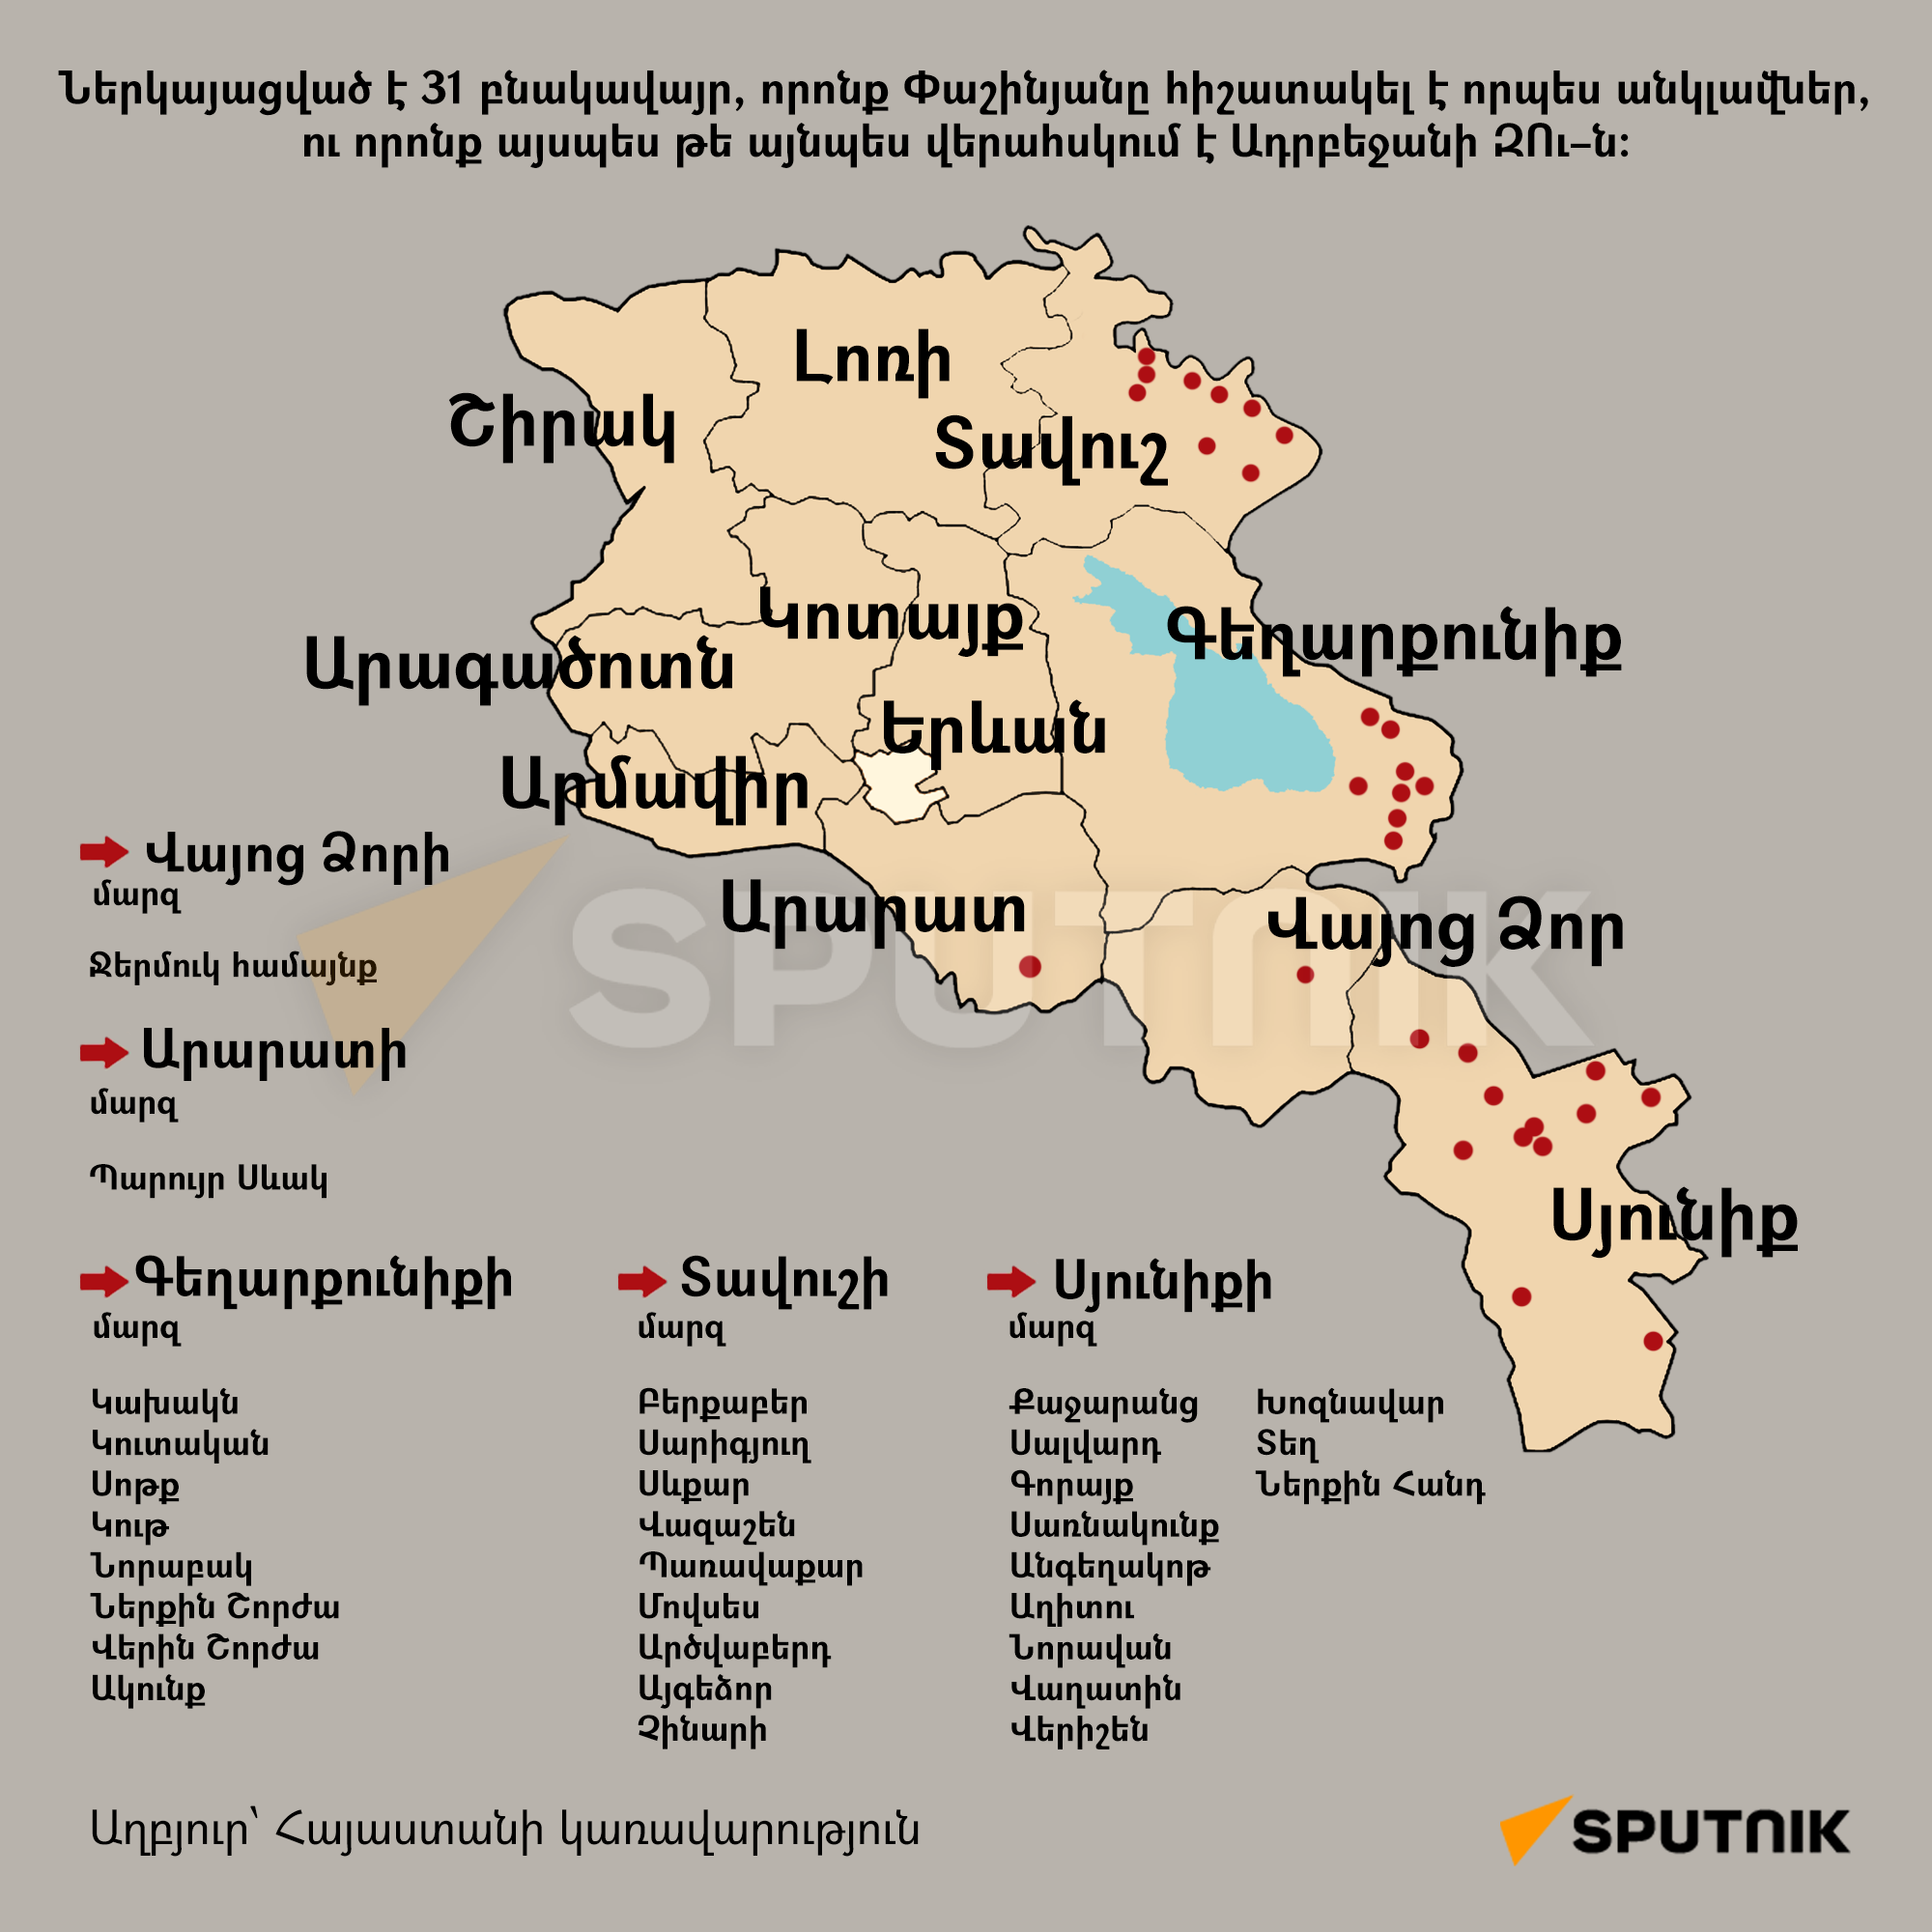 Ներկայացված է 31 բնակավայր, որոնք Փաշինյանը հիշատակել է որպես անկլավներ, ու որոնք այսպես թե այնպես վերահսկում է Ադրբեջանի ԶՈւ–ն։ - Sputnik Արմենիա